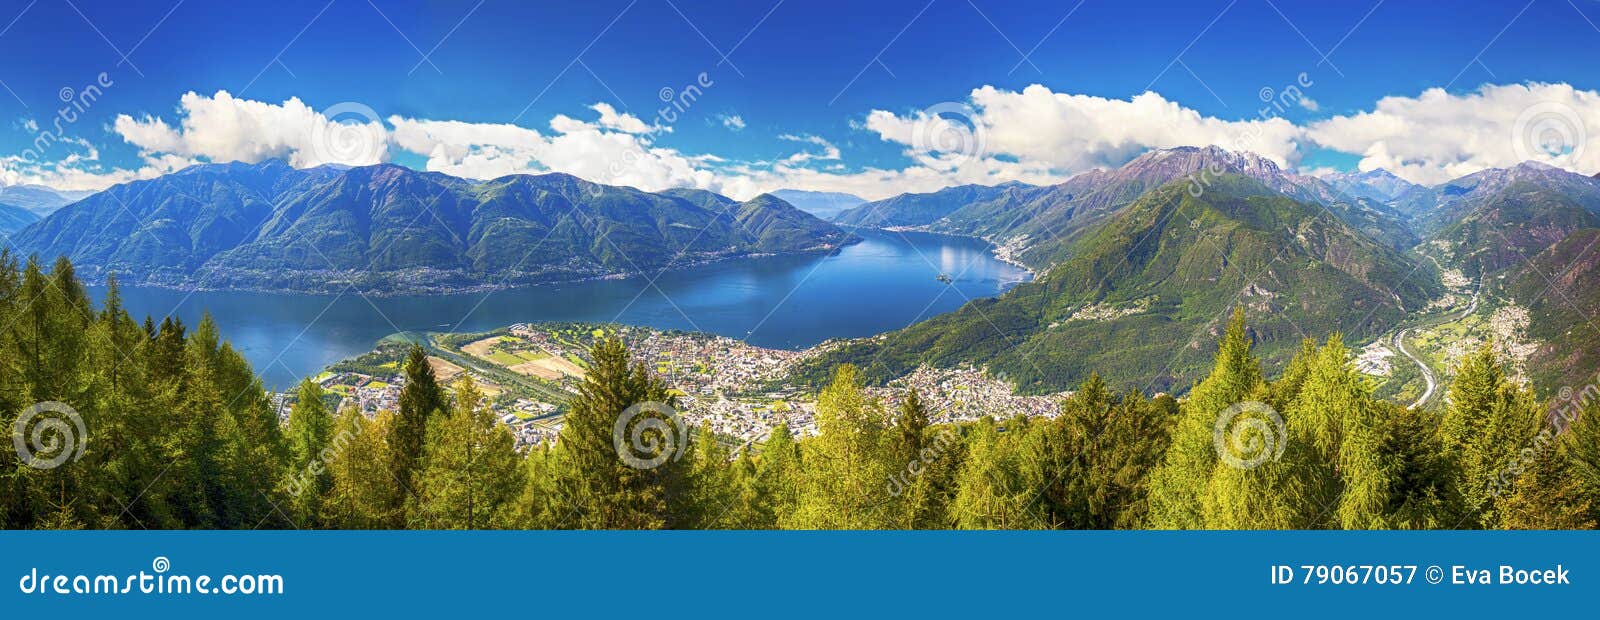 locarno city and lago maggiore from cardada mountain, ticino, switzerland